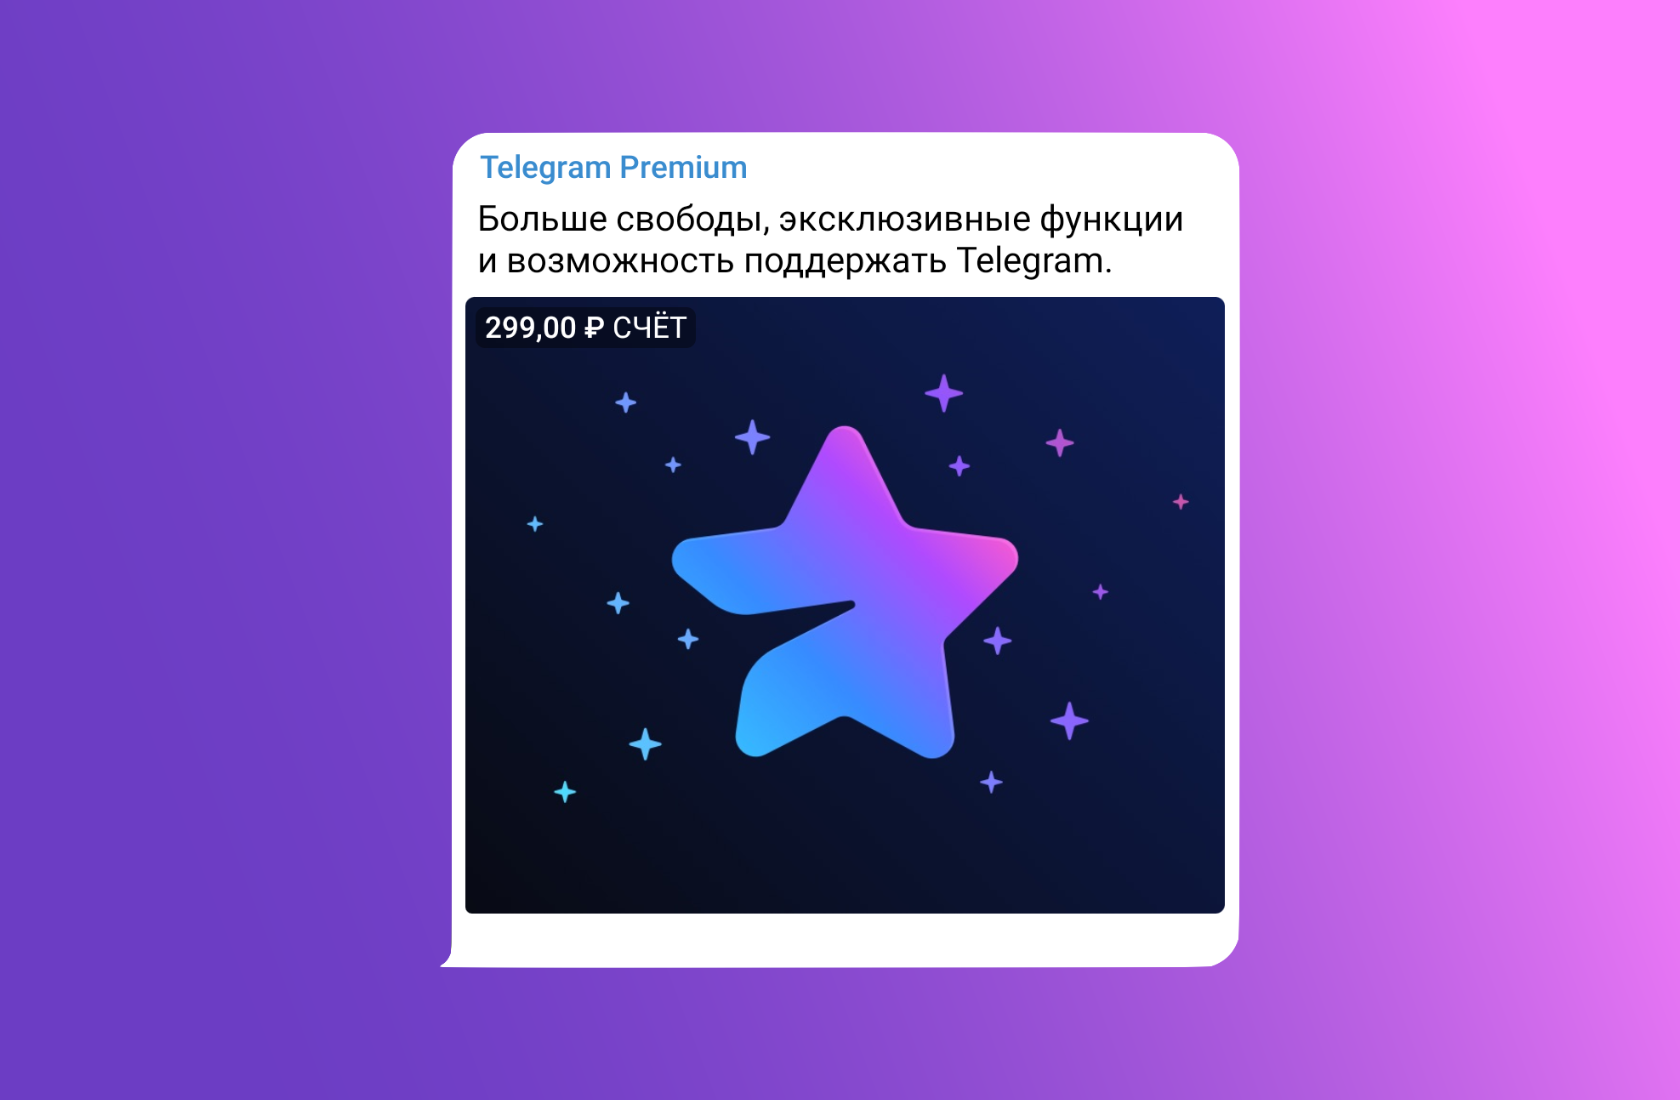 Телеграмм премиум скачать бесплатно андроид последняя версия без вирусов полную на русском фото 70